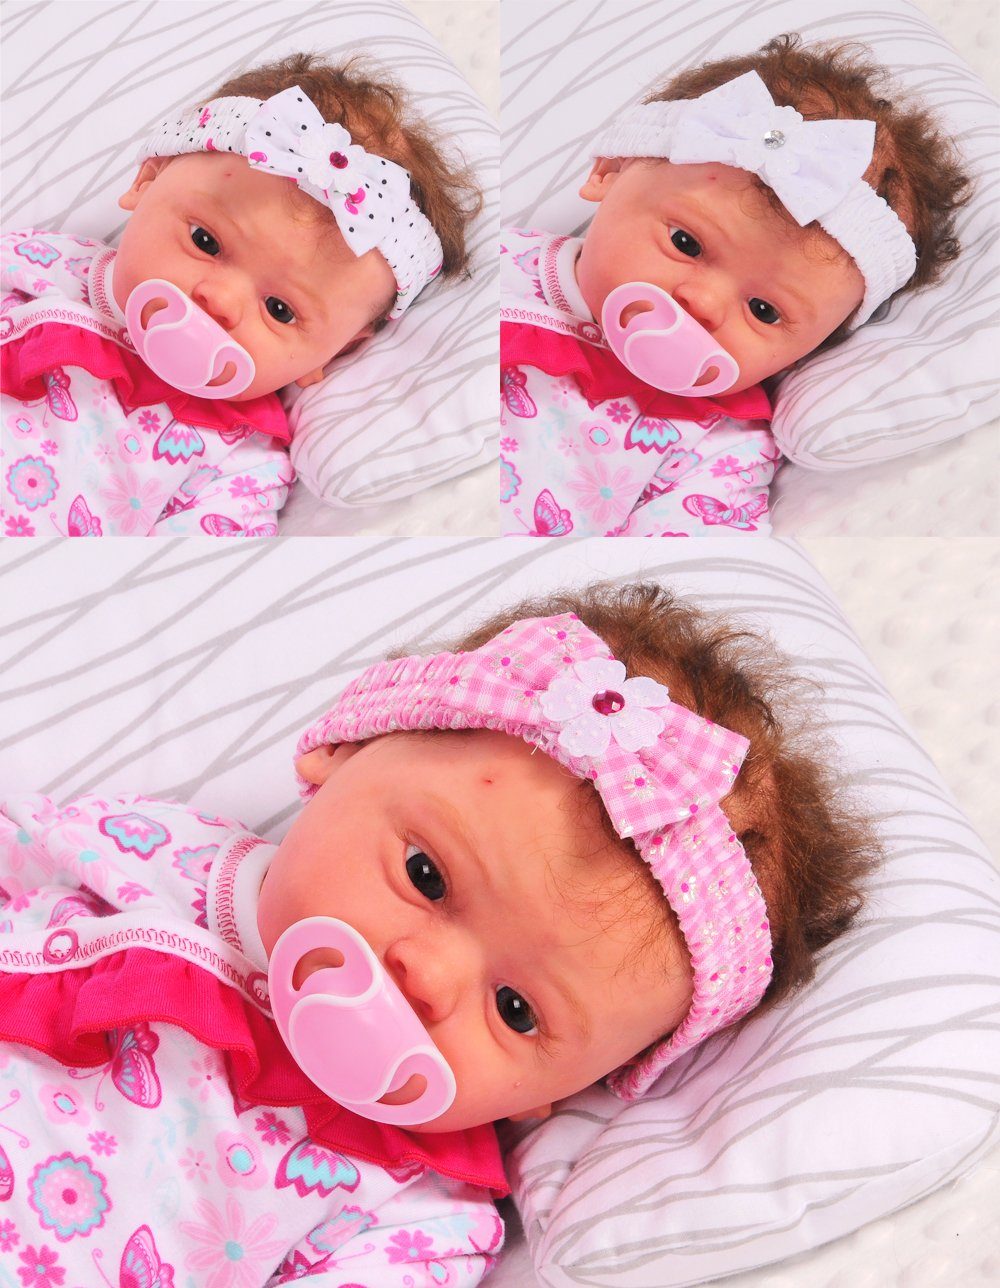 La Bortini Stirnband 3er Pack Stirnbänder für Baby und Kleinkinder 0-12Monate Stirnband